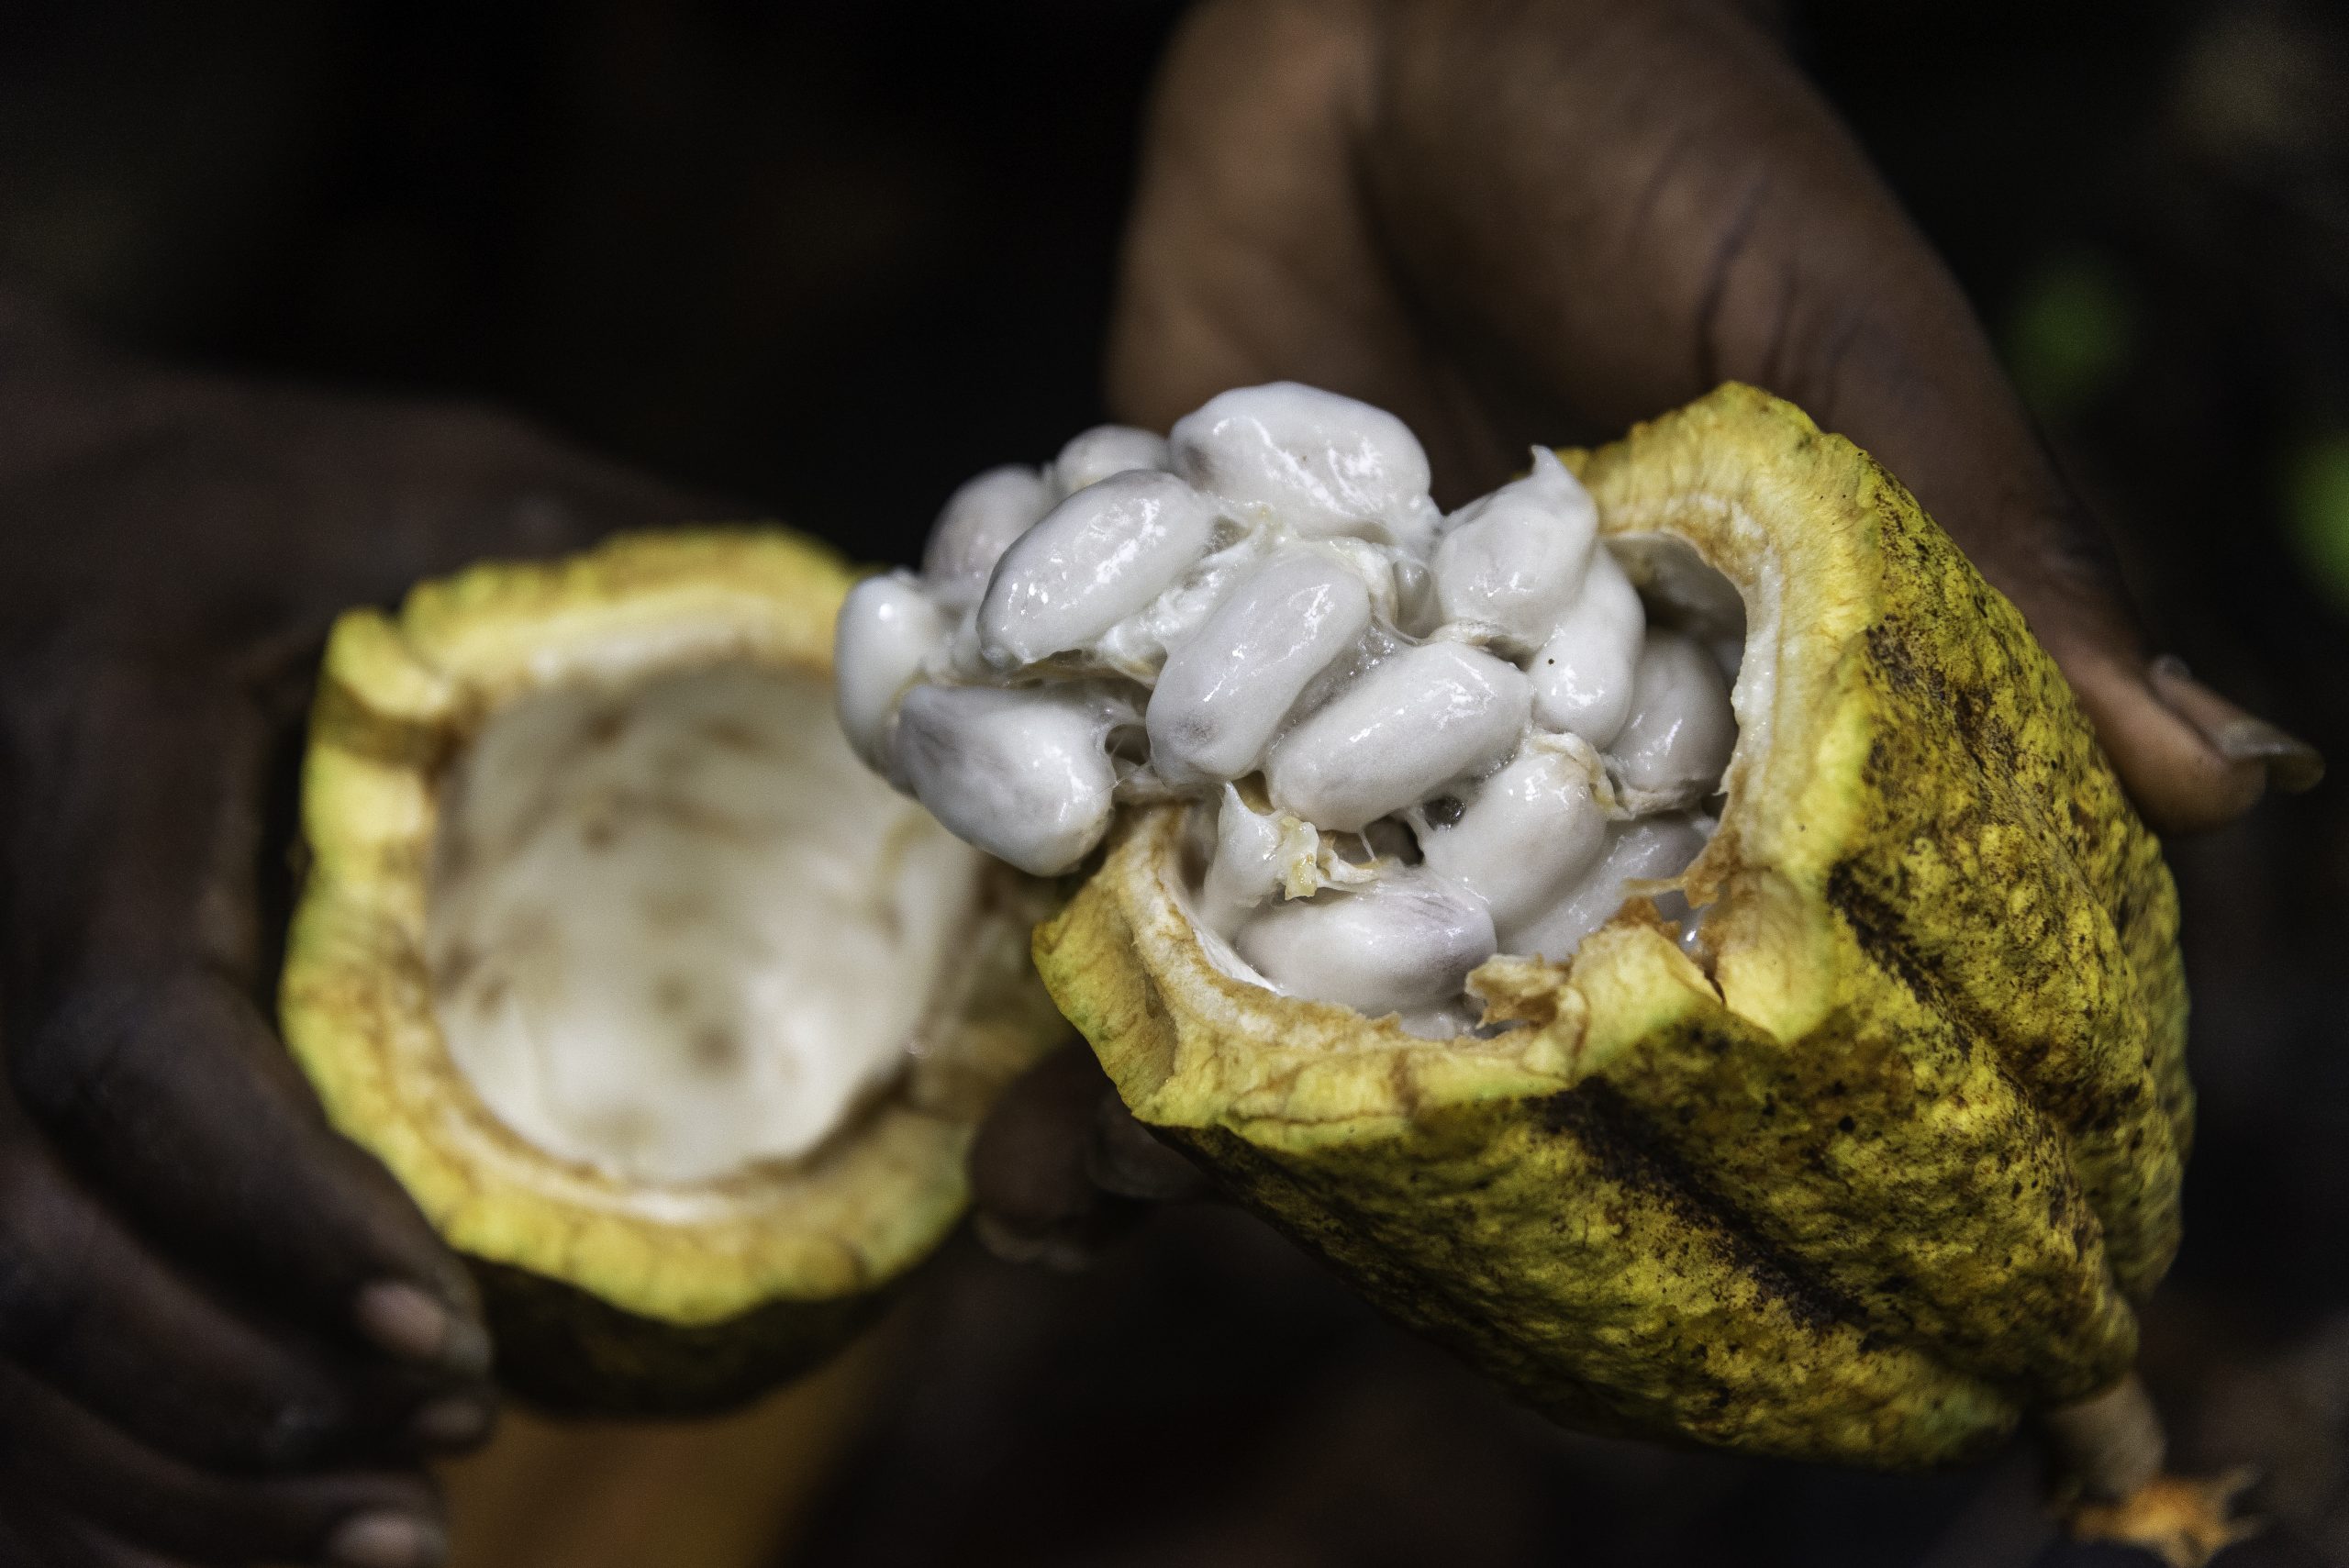 Feccano verleent prestige aan cacao uit Haïti